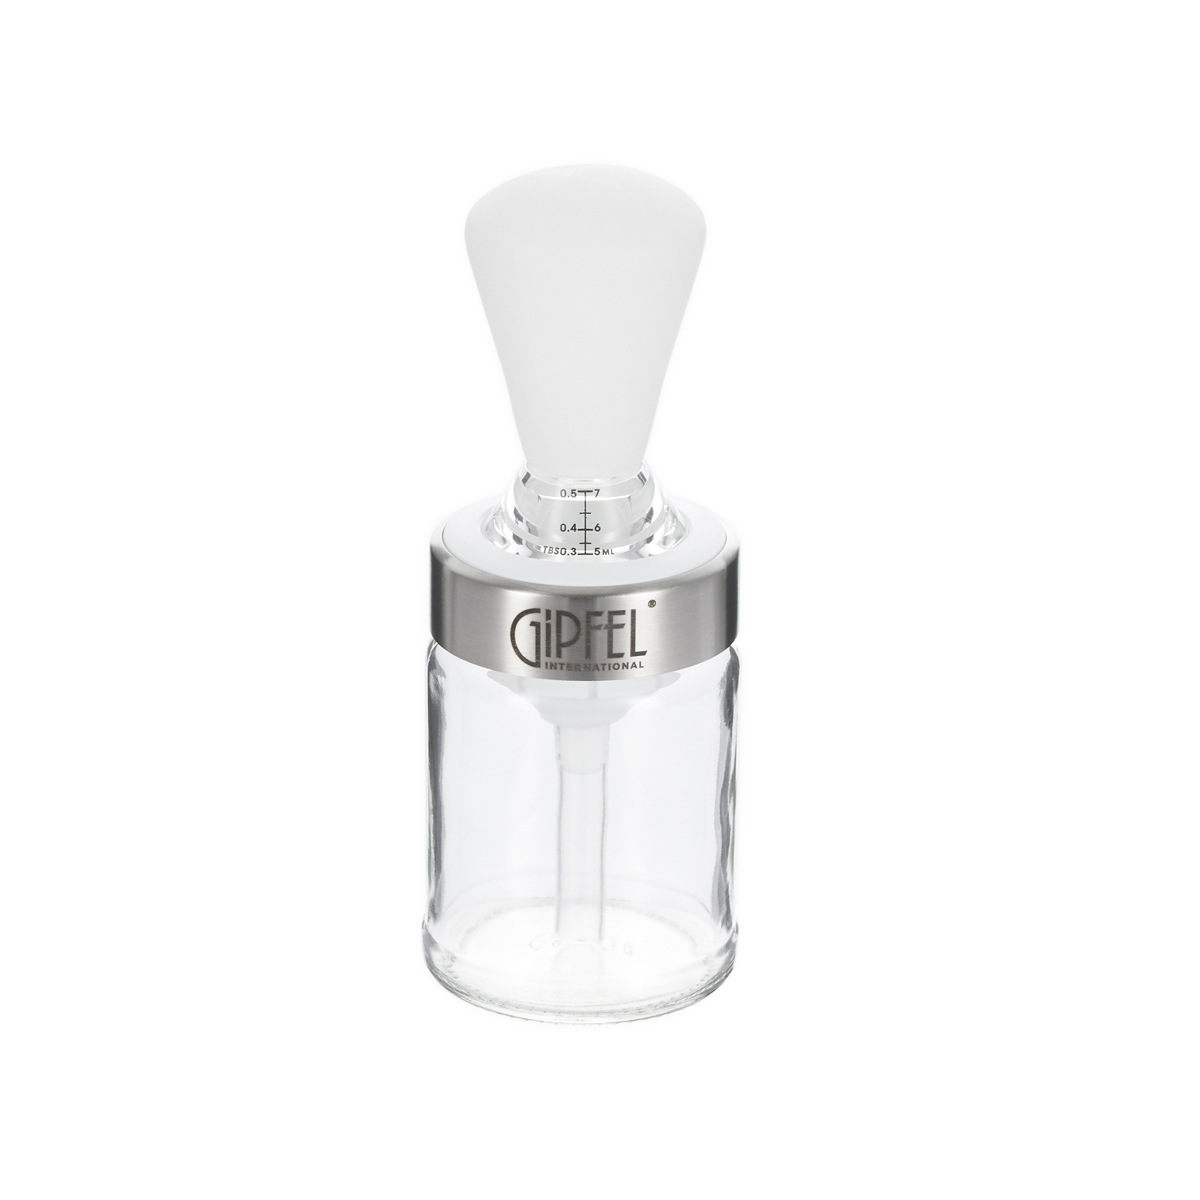 Кисточка вакуумная для масла со стеклянным контейнером GIPFEL 50700, цвет белый - фото 1